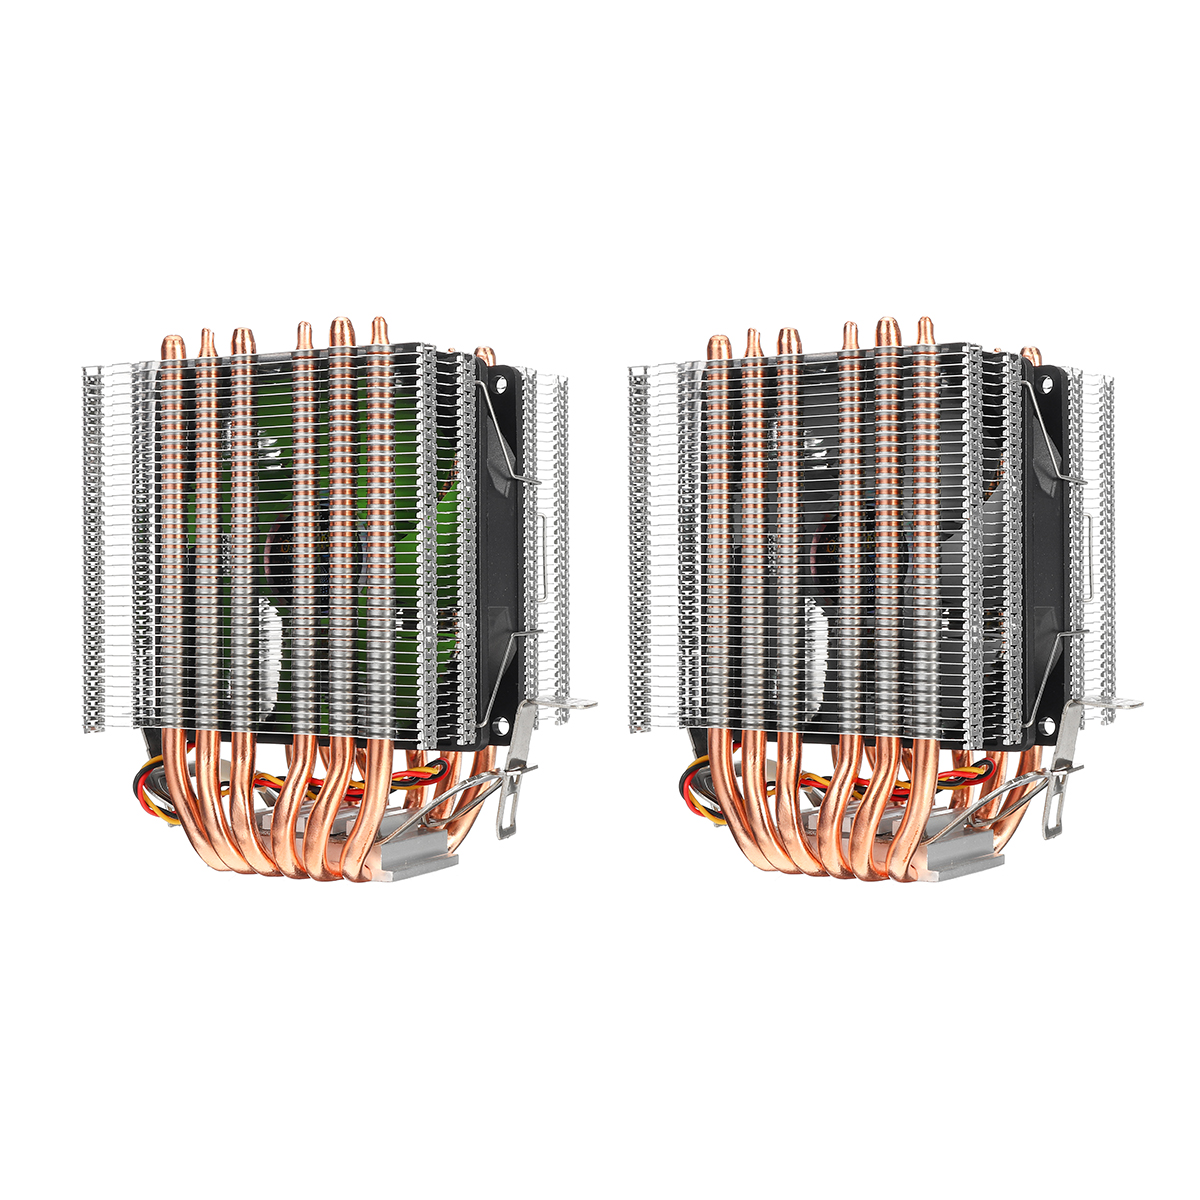 Dissipador de calor do ventilador do cooler do processador de 3 pinos 6 Ventilador de refrigeração do tubo de calor de cobre para Intel 775/1150/1151/1155/1156/1366 e AMD All Platforms